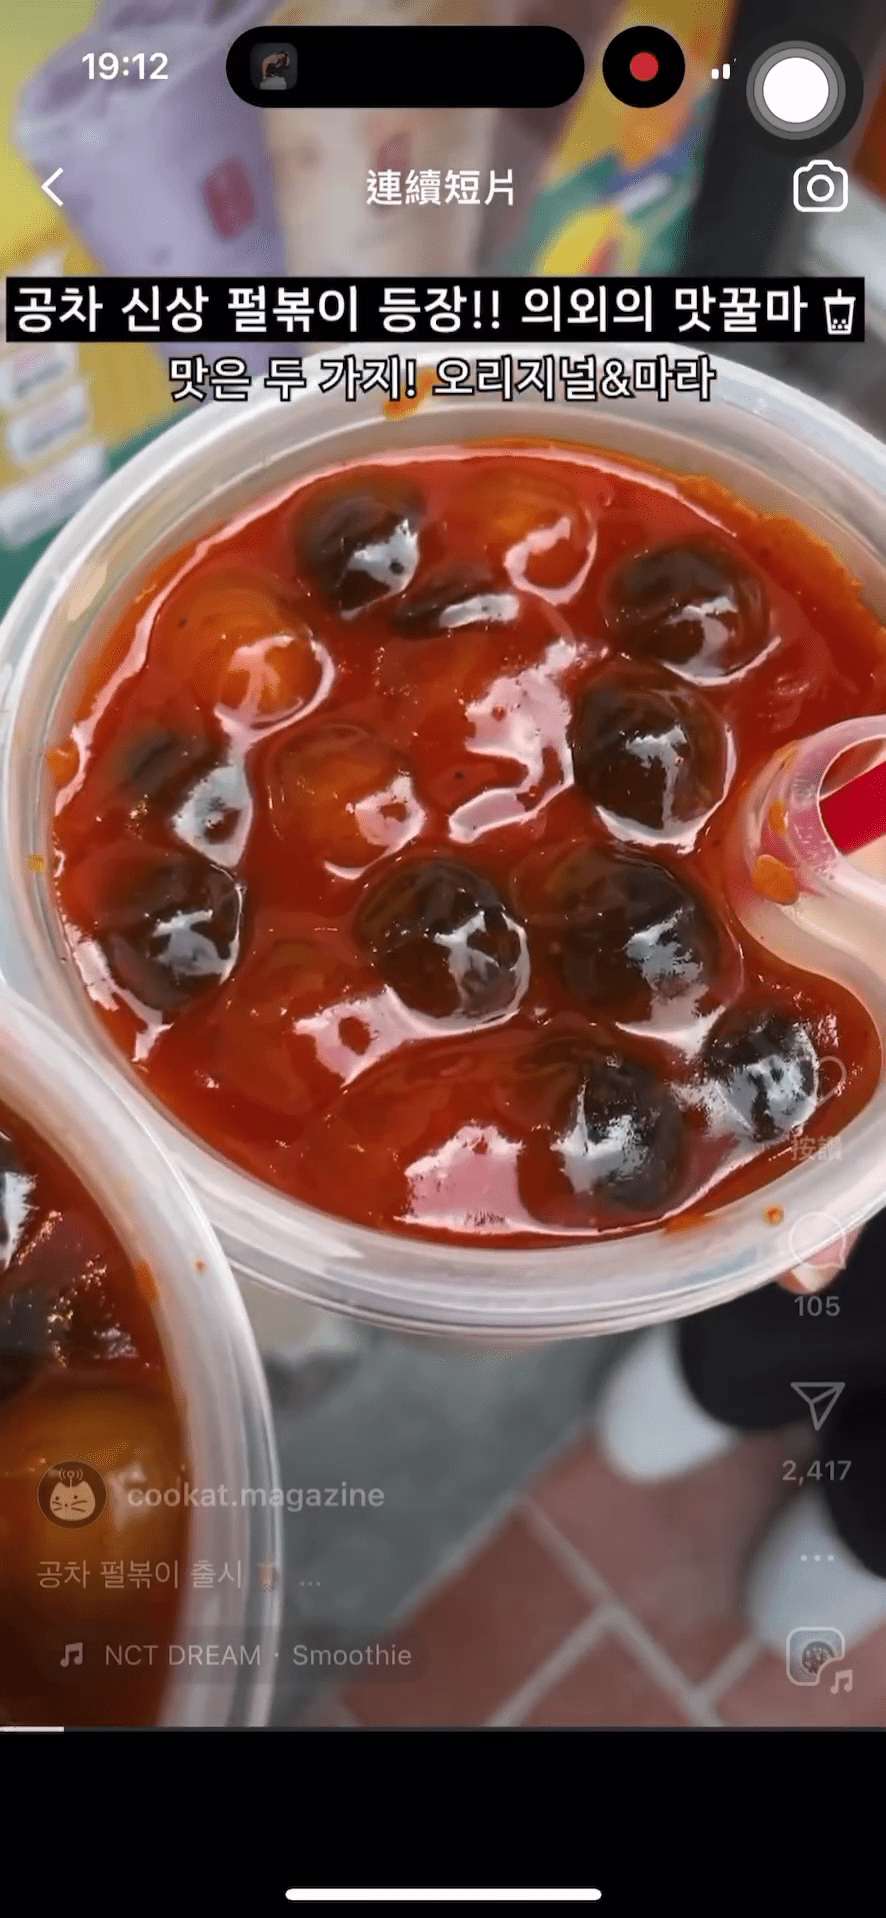 满满的黑、白珍珠浸泡在红色辣酱中。